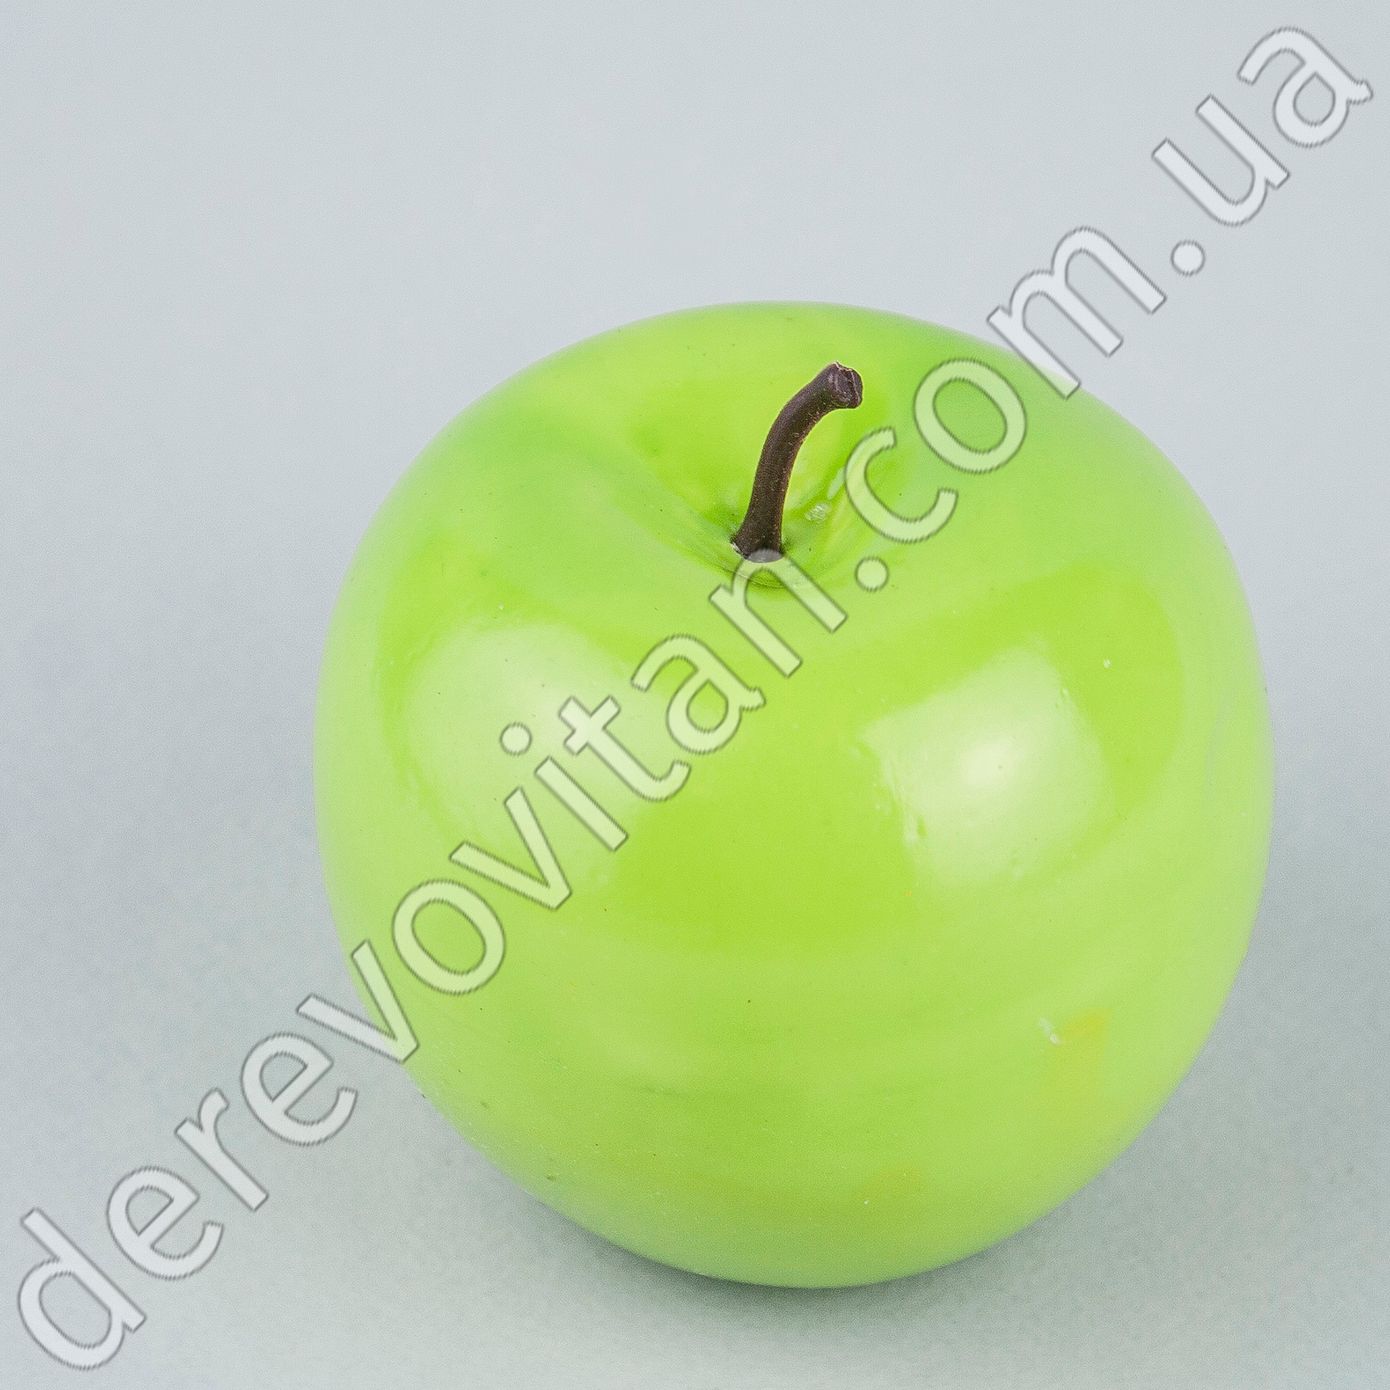 Искусственные яблоки, зеленые, 6×7 см